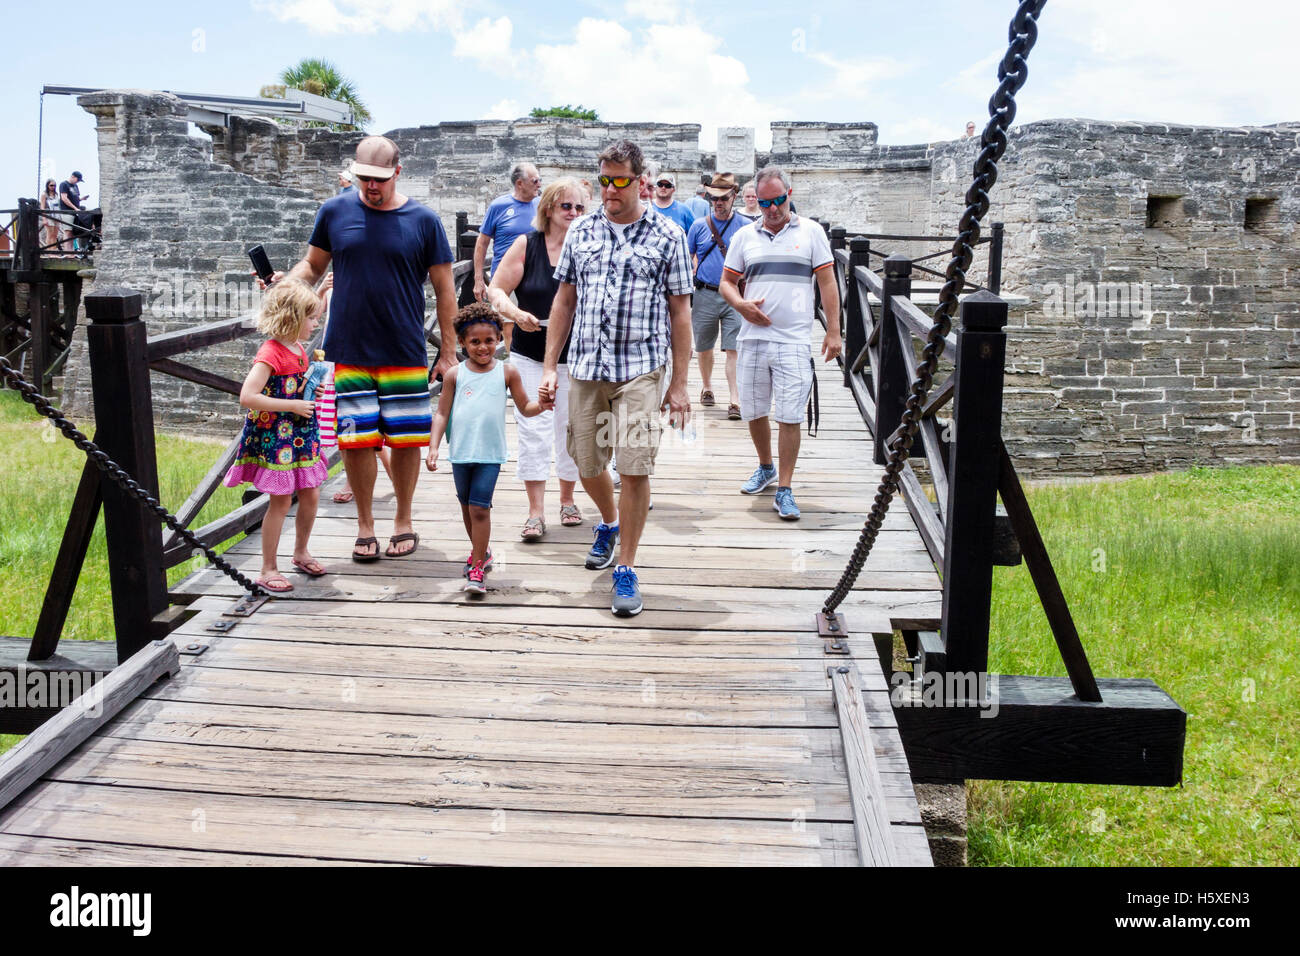 St. Saint Augustine Florida,Castillo de San Marcos National Monument,bridge across moat,families,historic fort,visitors travel traveling tour tourist Stock Photo